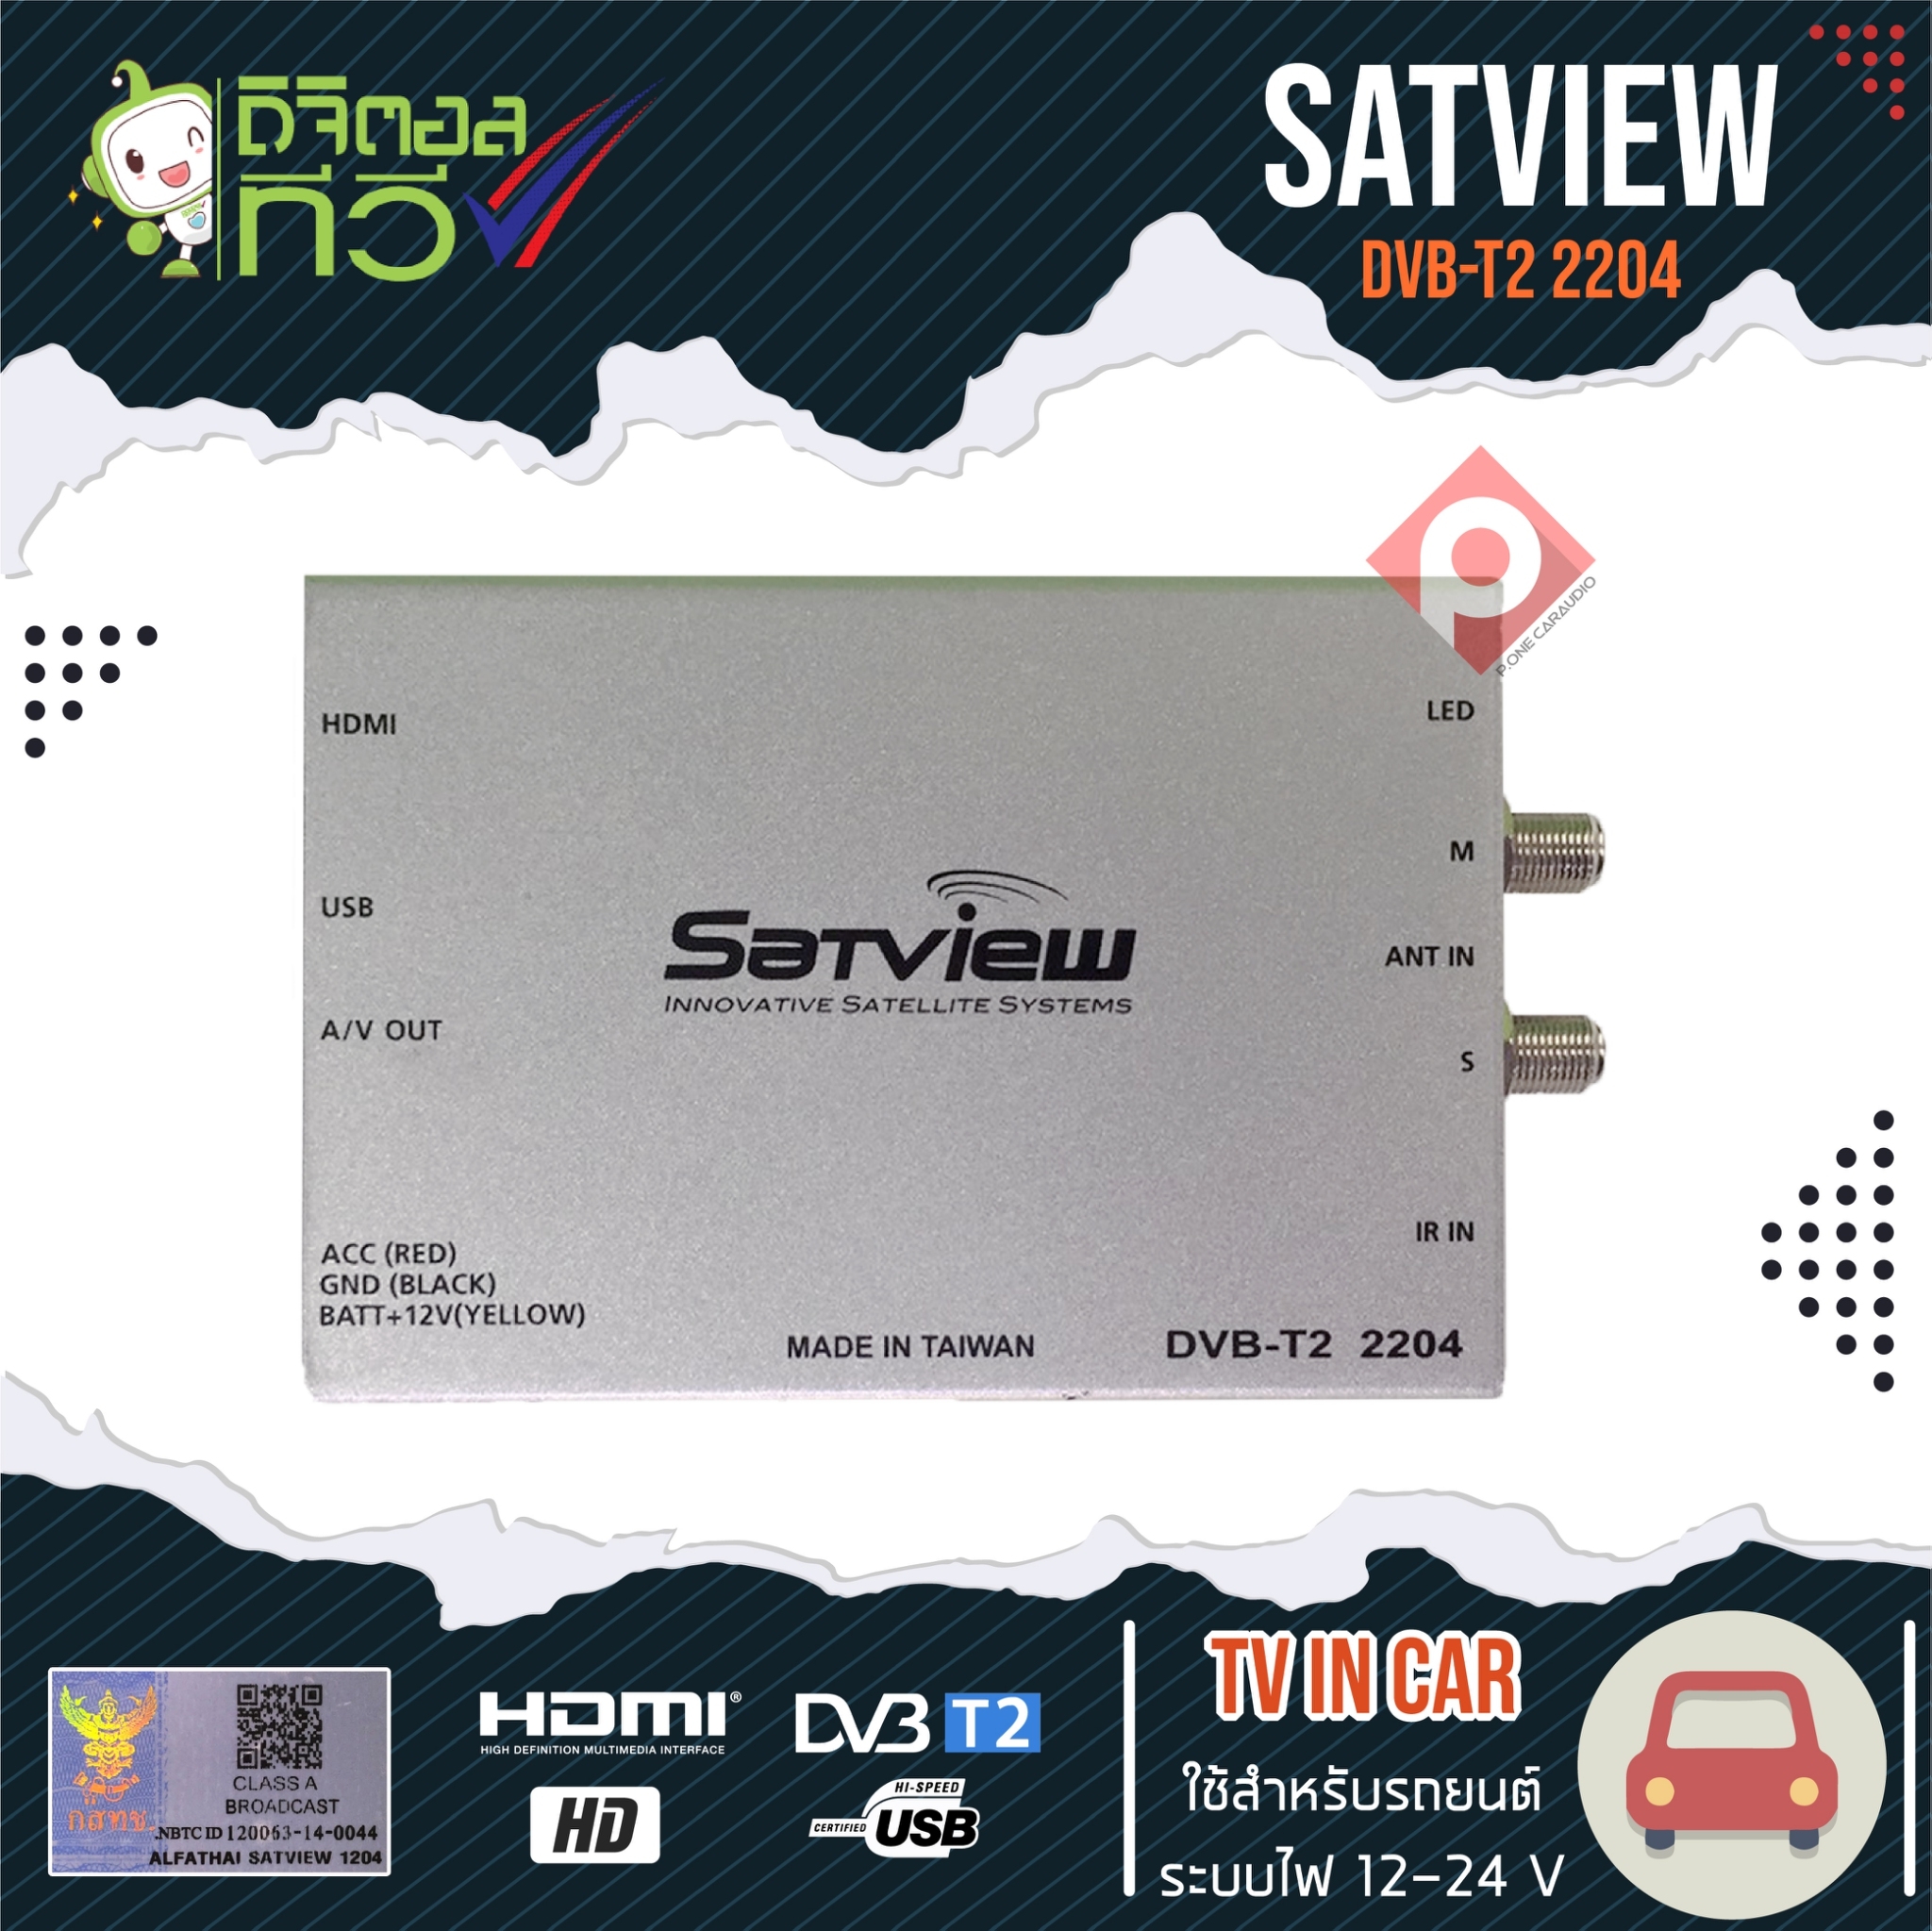 กล่องทีวีดิจิตอลติดรถยนต์ SATVIEW DVB–T2 2204 เสาสัญญาณทีวี 2ชุด รายละเอียดสินค้า กล่องทีวีดิจิตอลติดรถยนต์